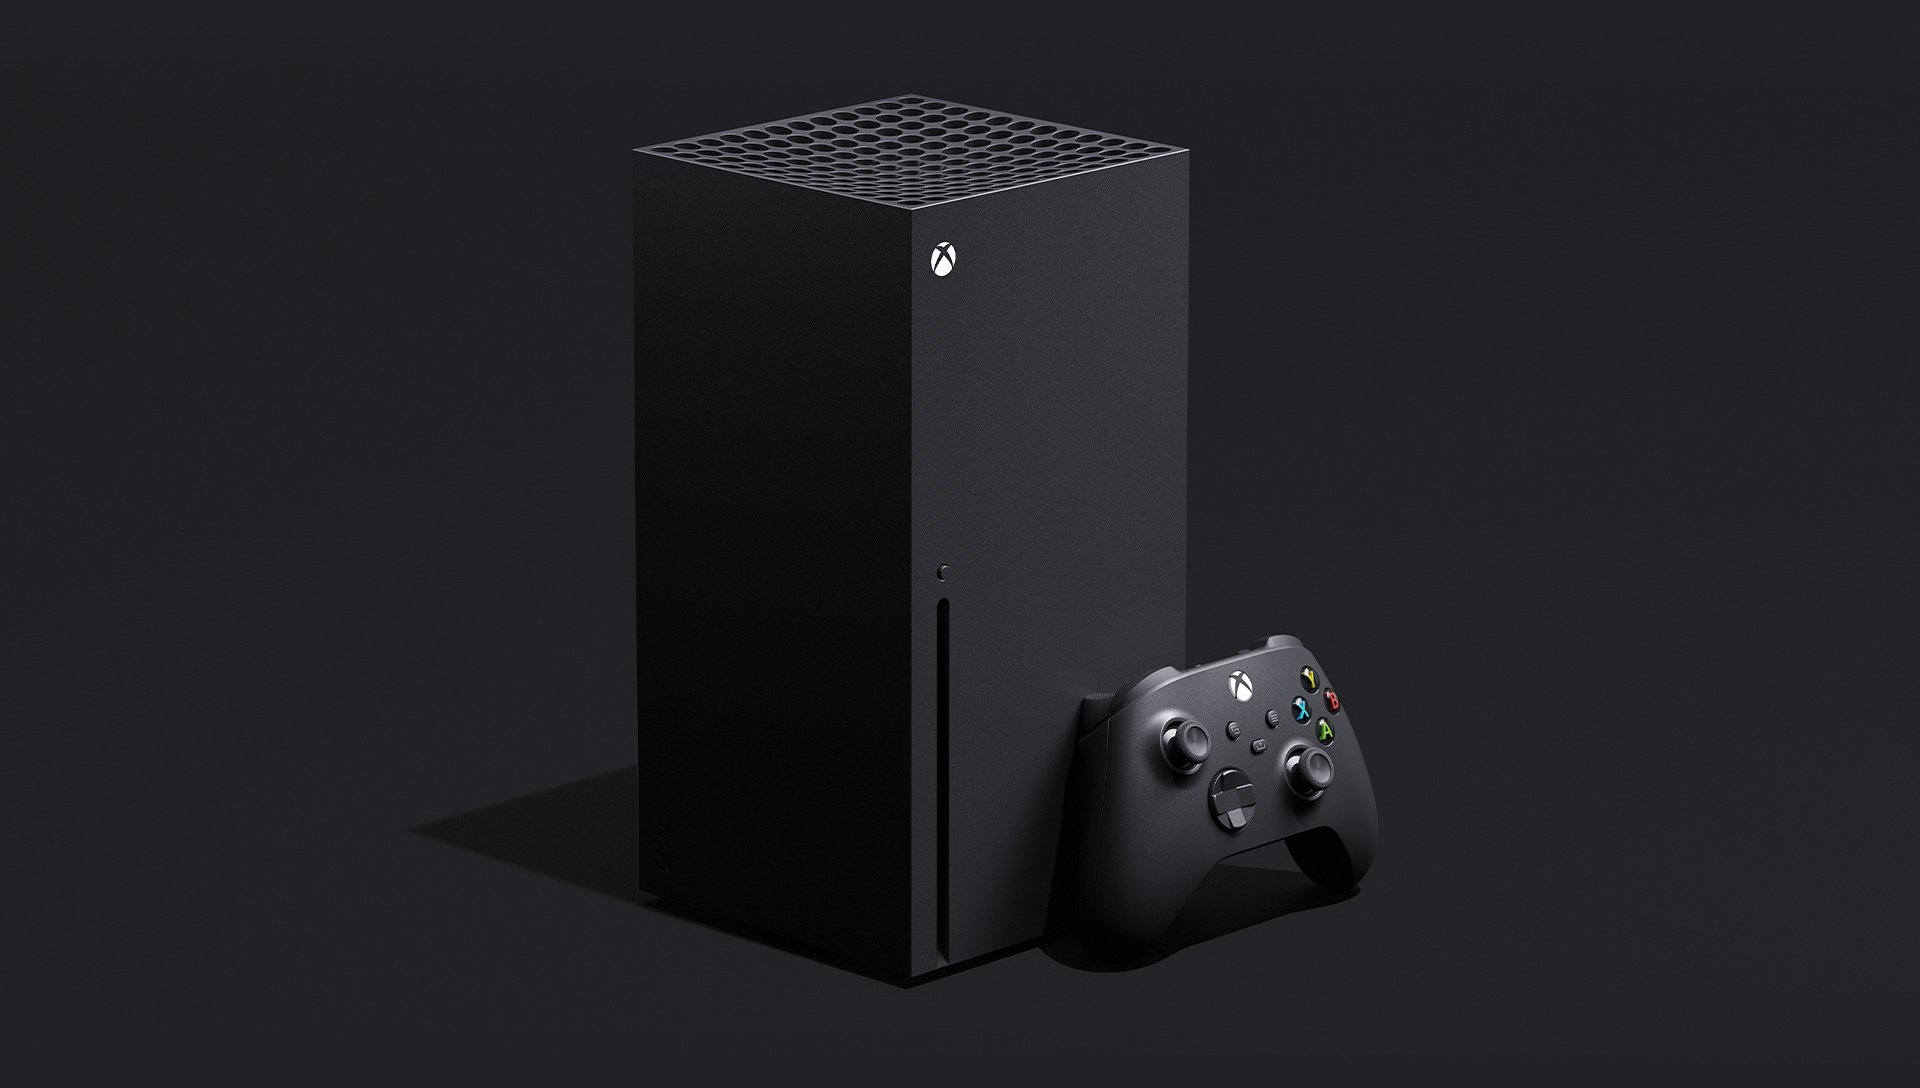 La nueva consola de juegos Xbox Series X de Microsoft saldrá a la venta en el año 2020. Y lo que le de Sony?